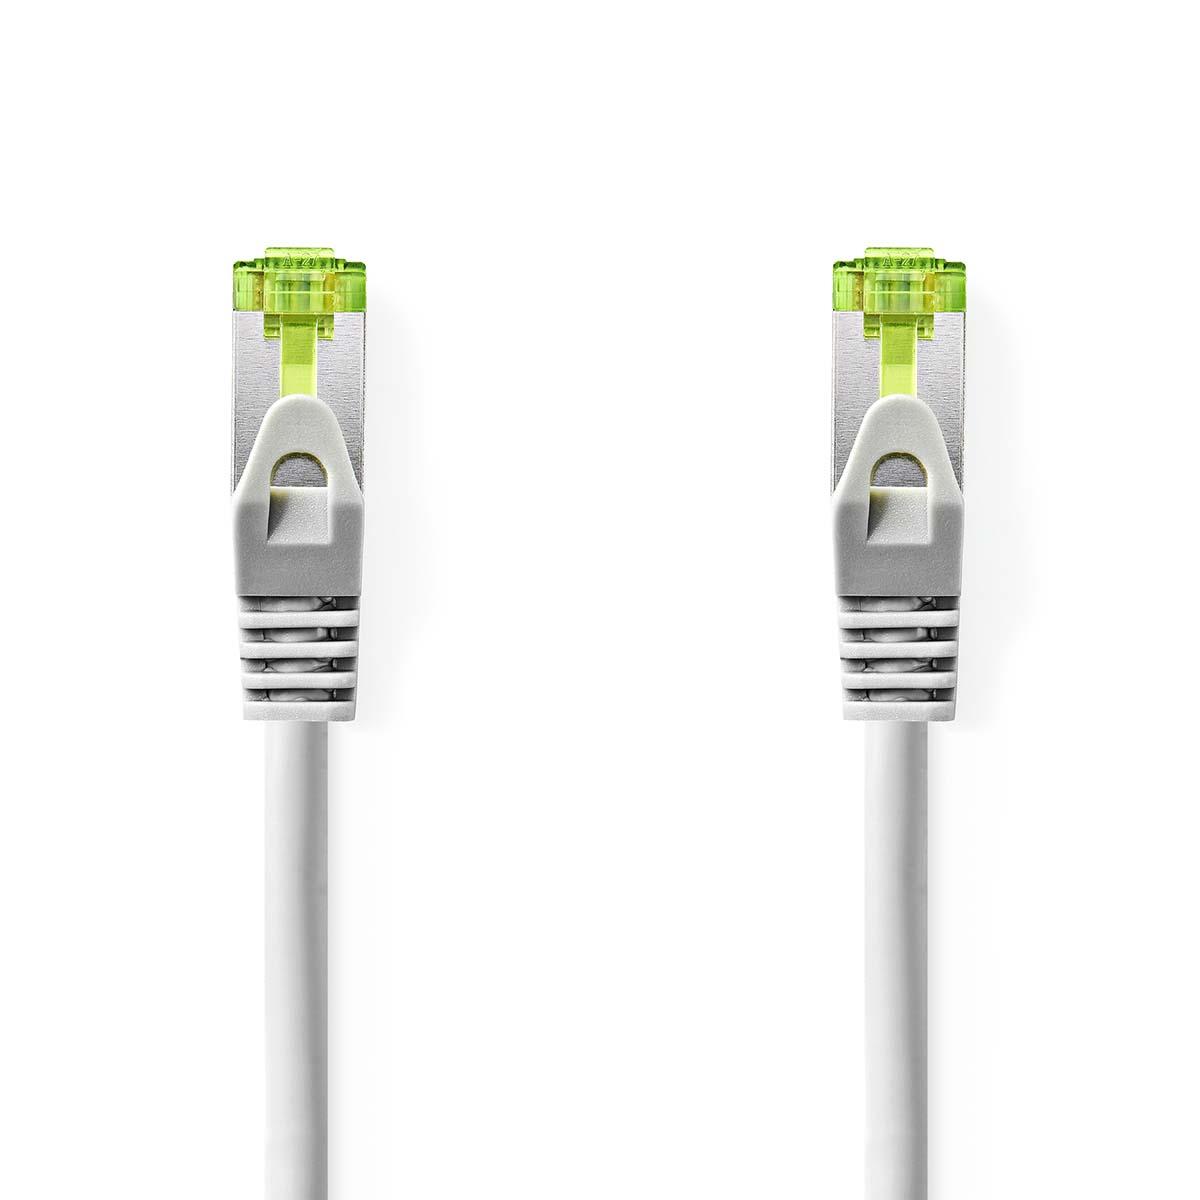 Cable ethernet rj45(8p8c) cat7 (10000 mbit/s) gris 0.5m